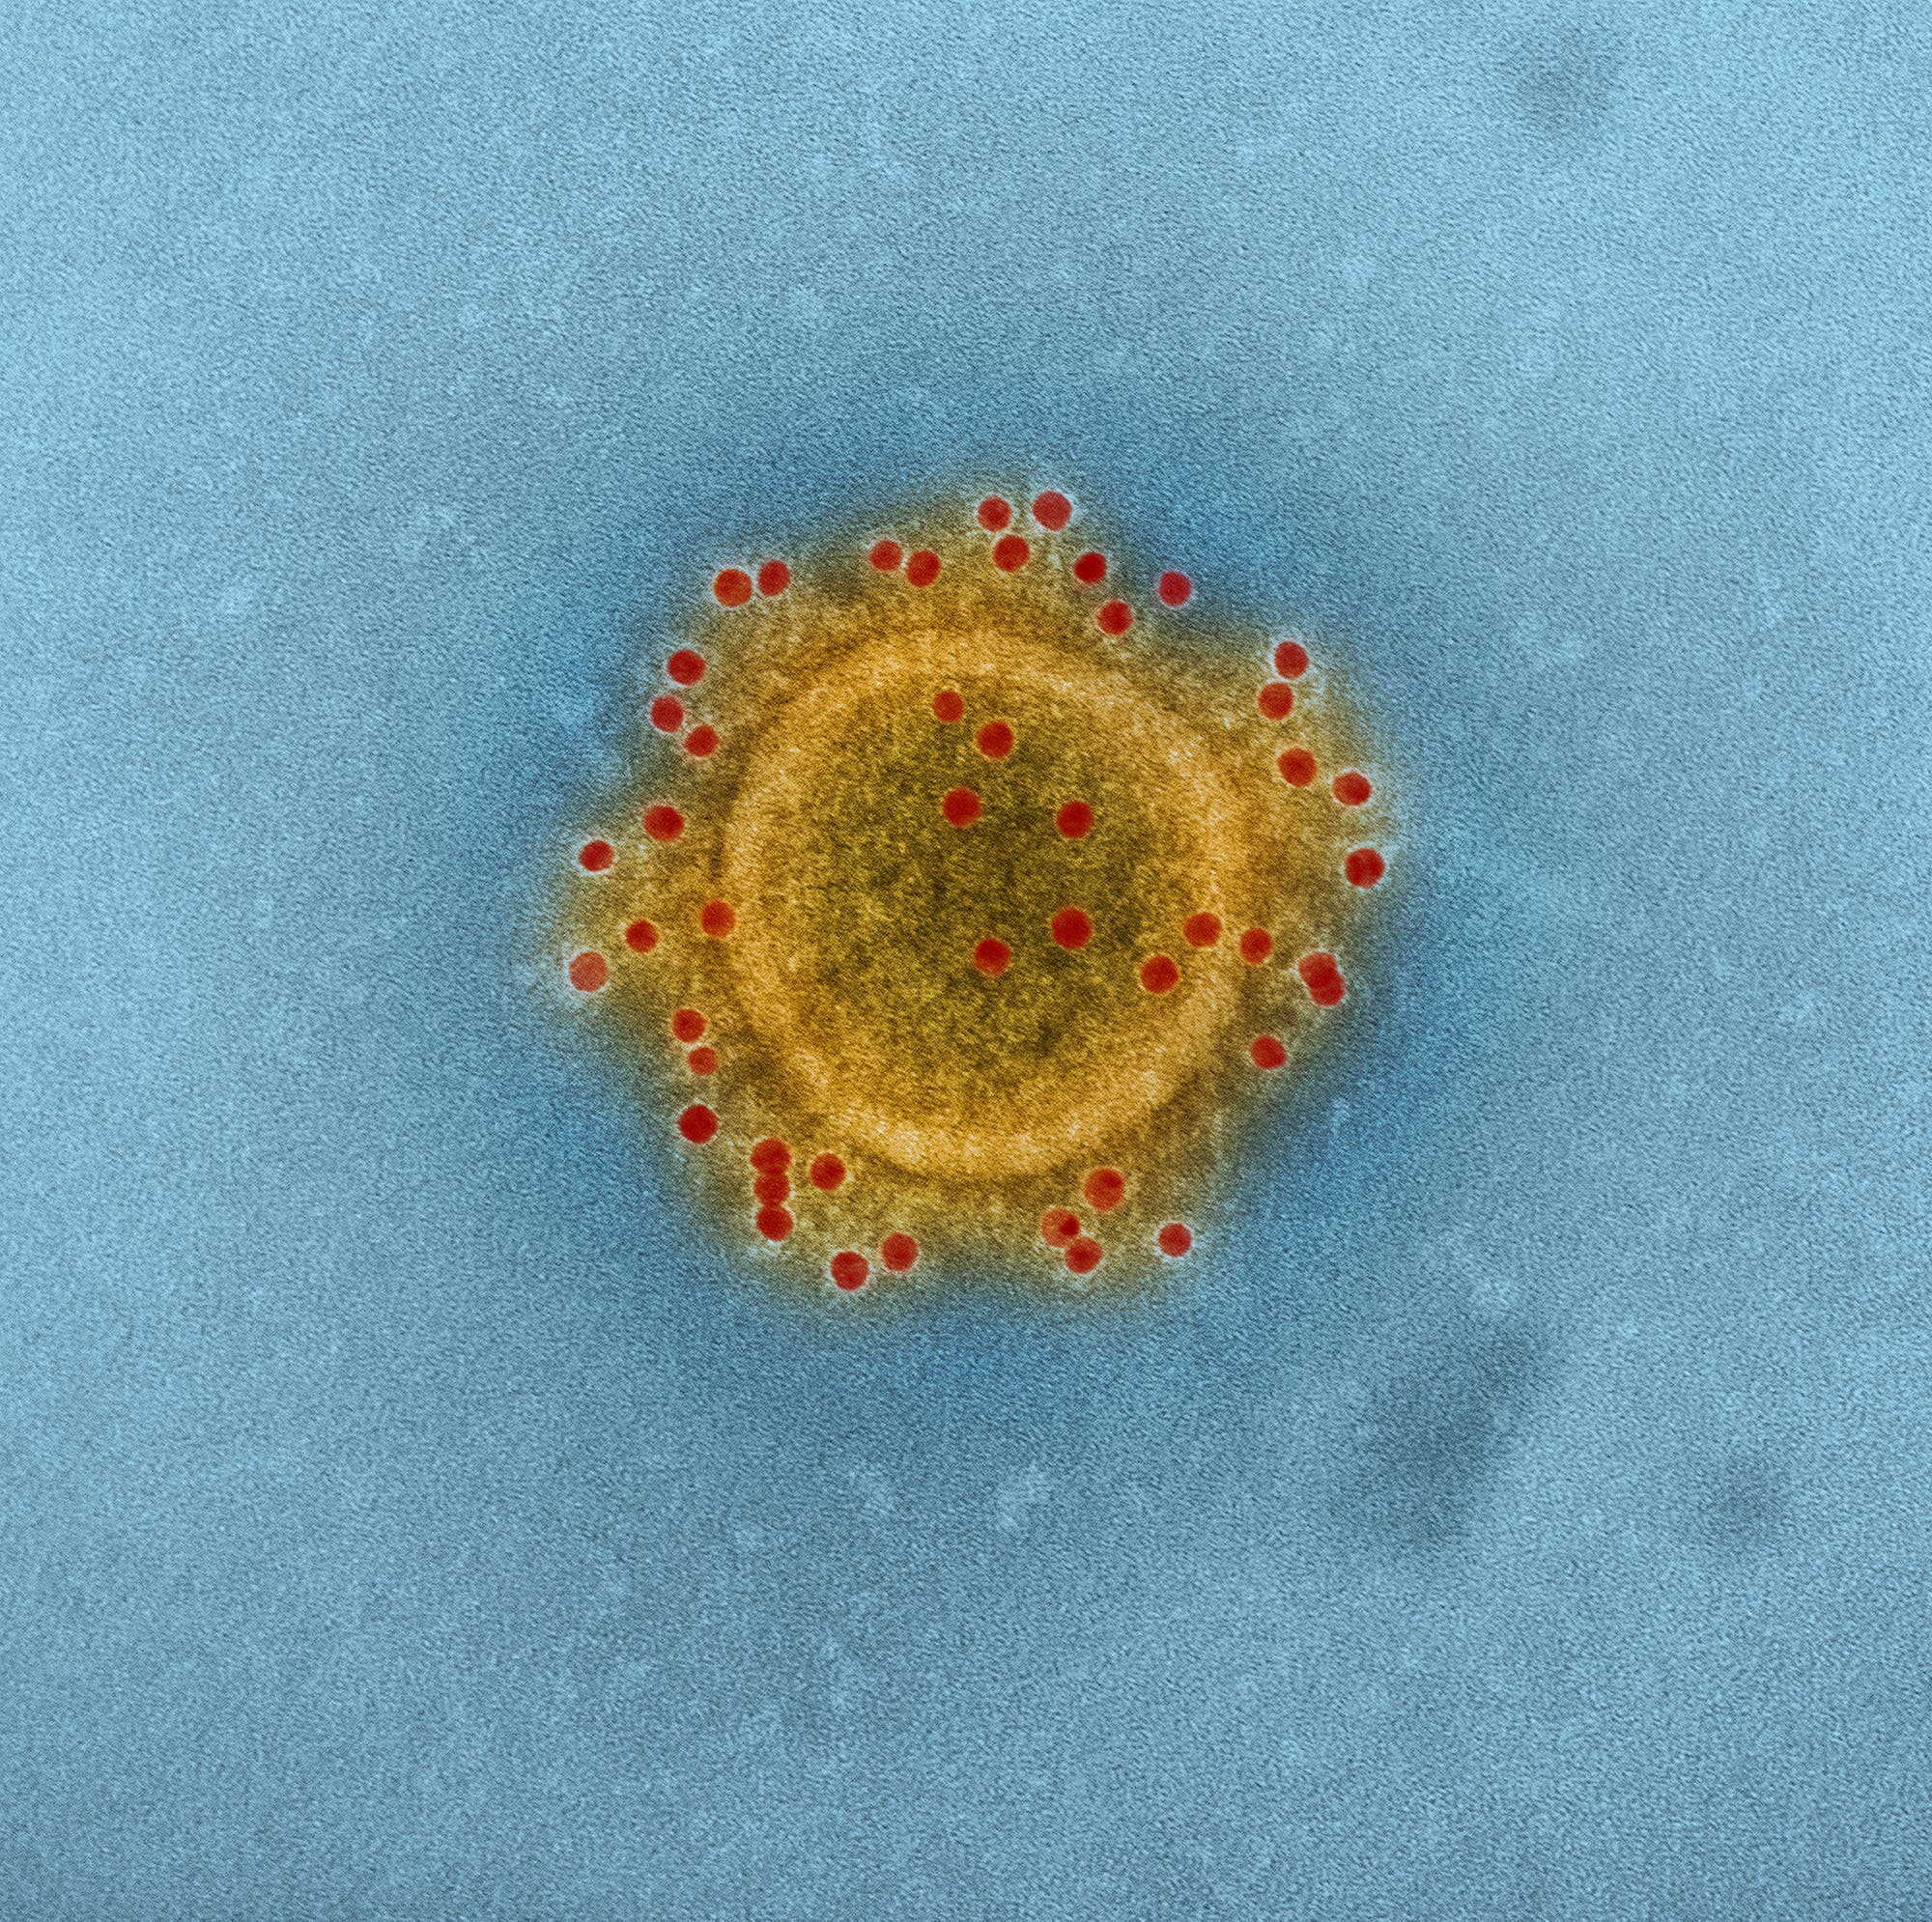 MERS-Coronavirus